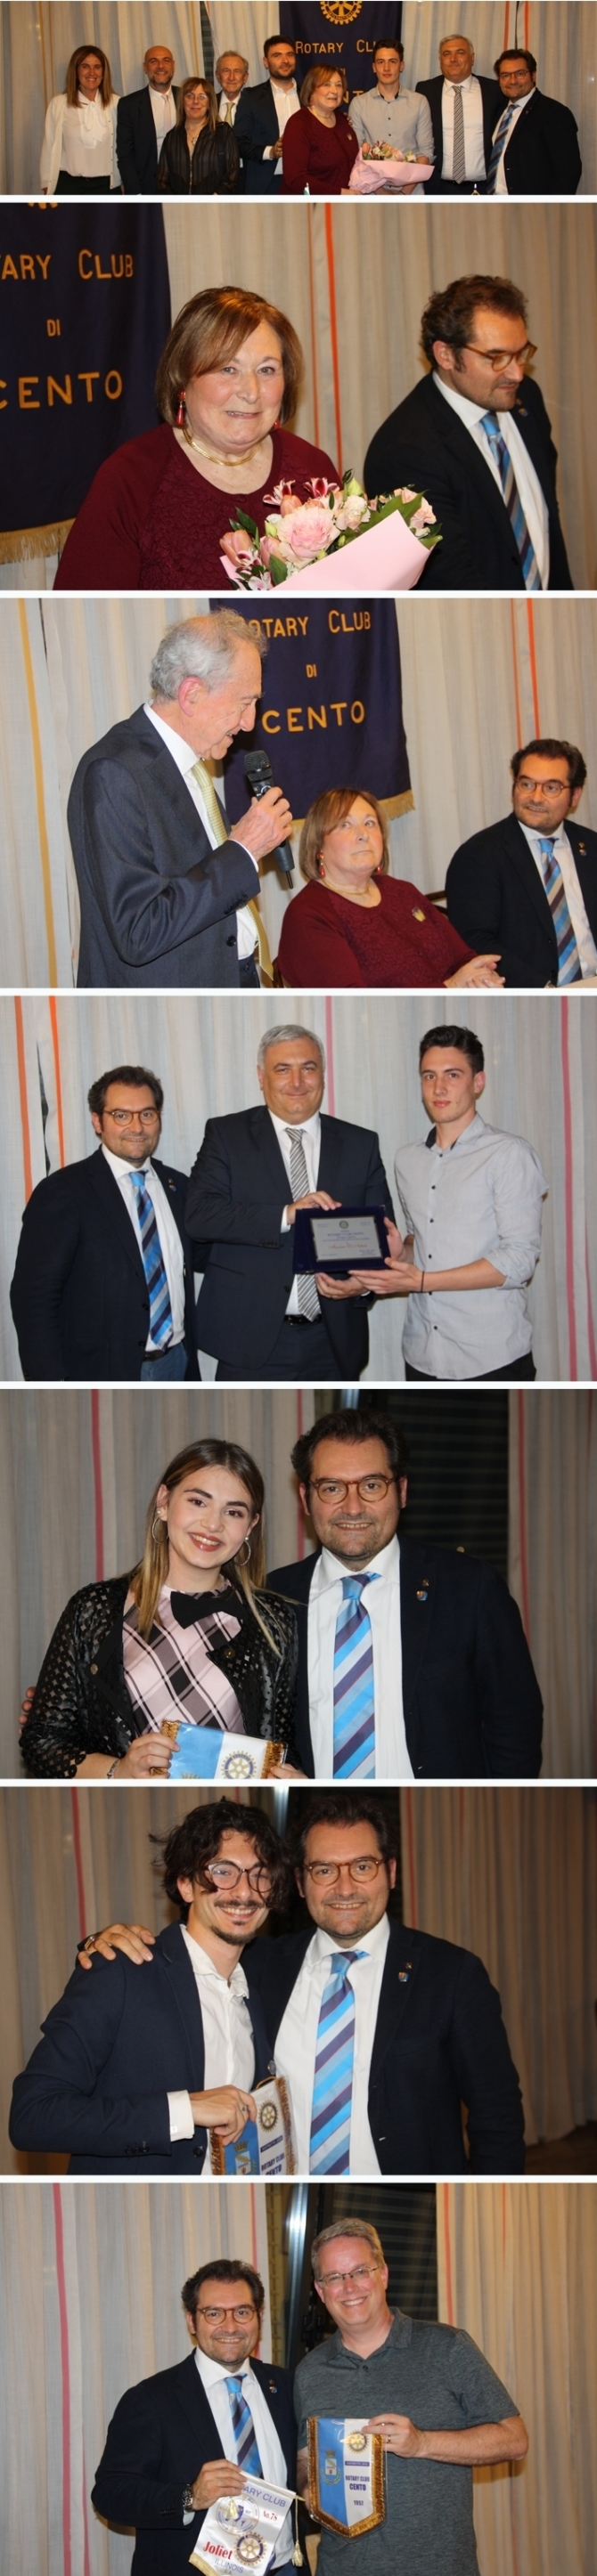 Venerdì 24 Maggio 2019: "Premio Franco Zarri" - ROTARY CLUB di CENTO